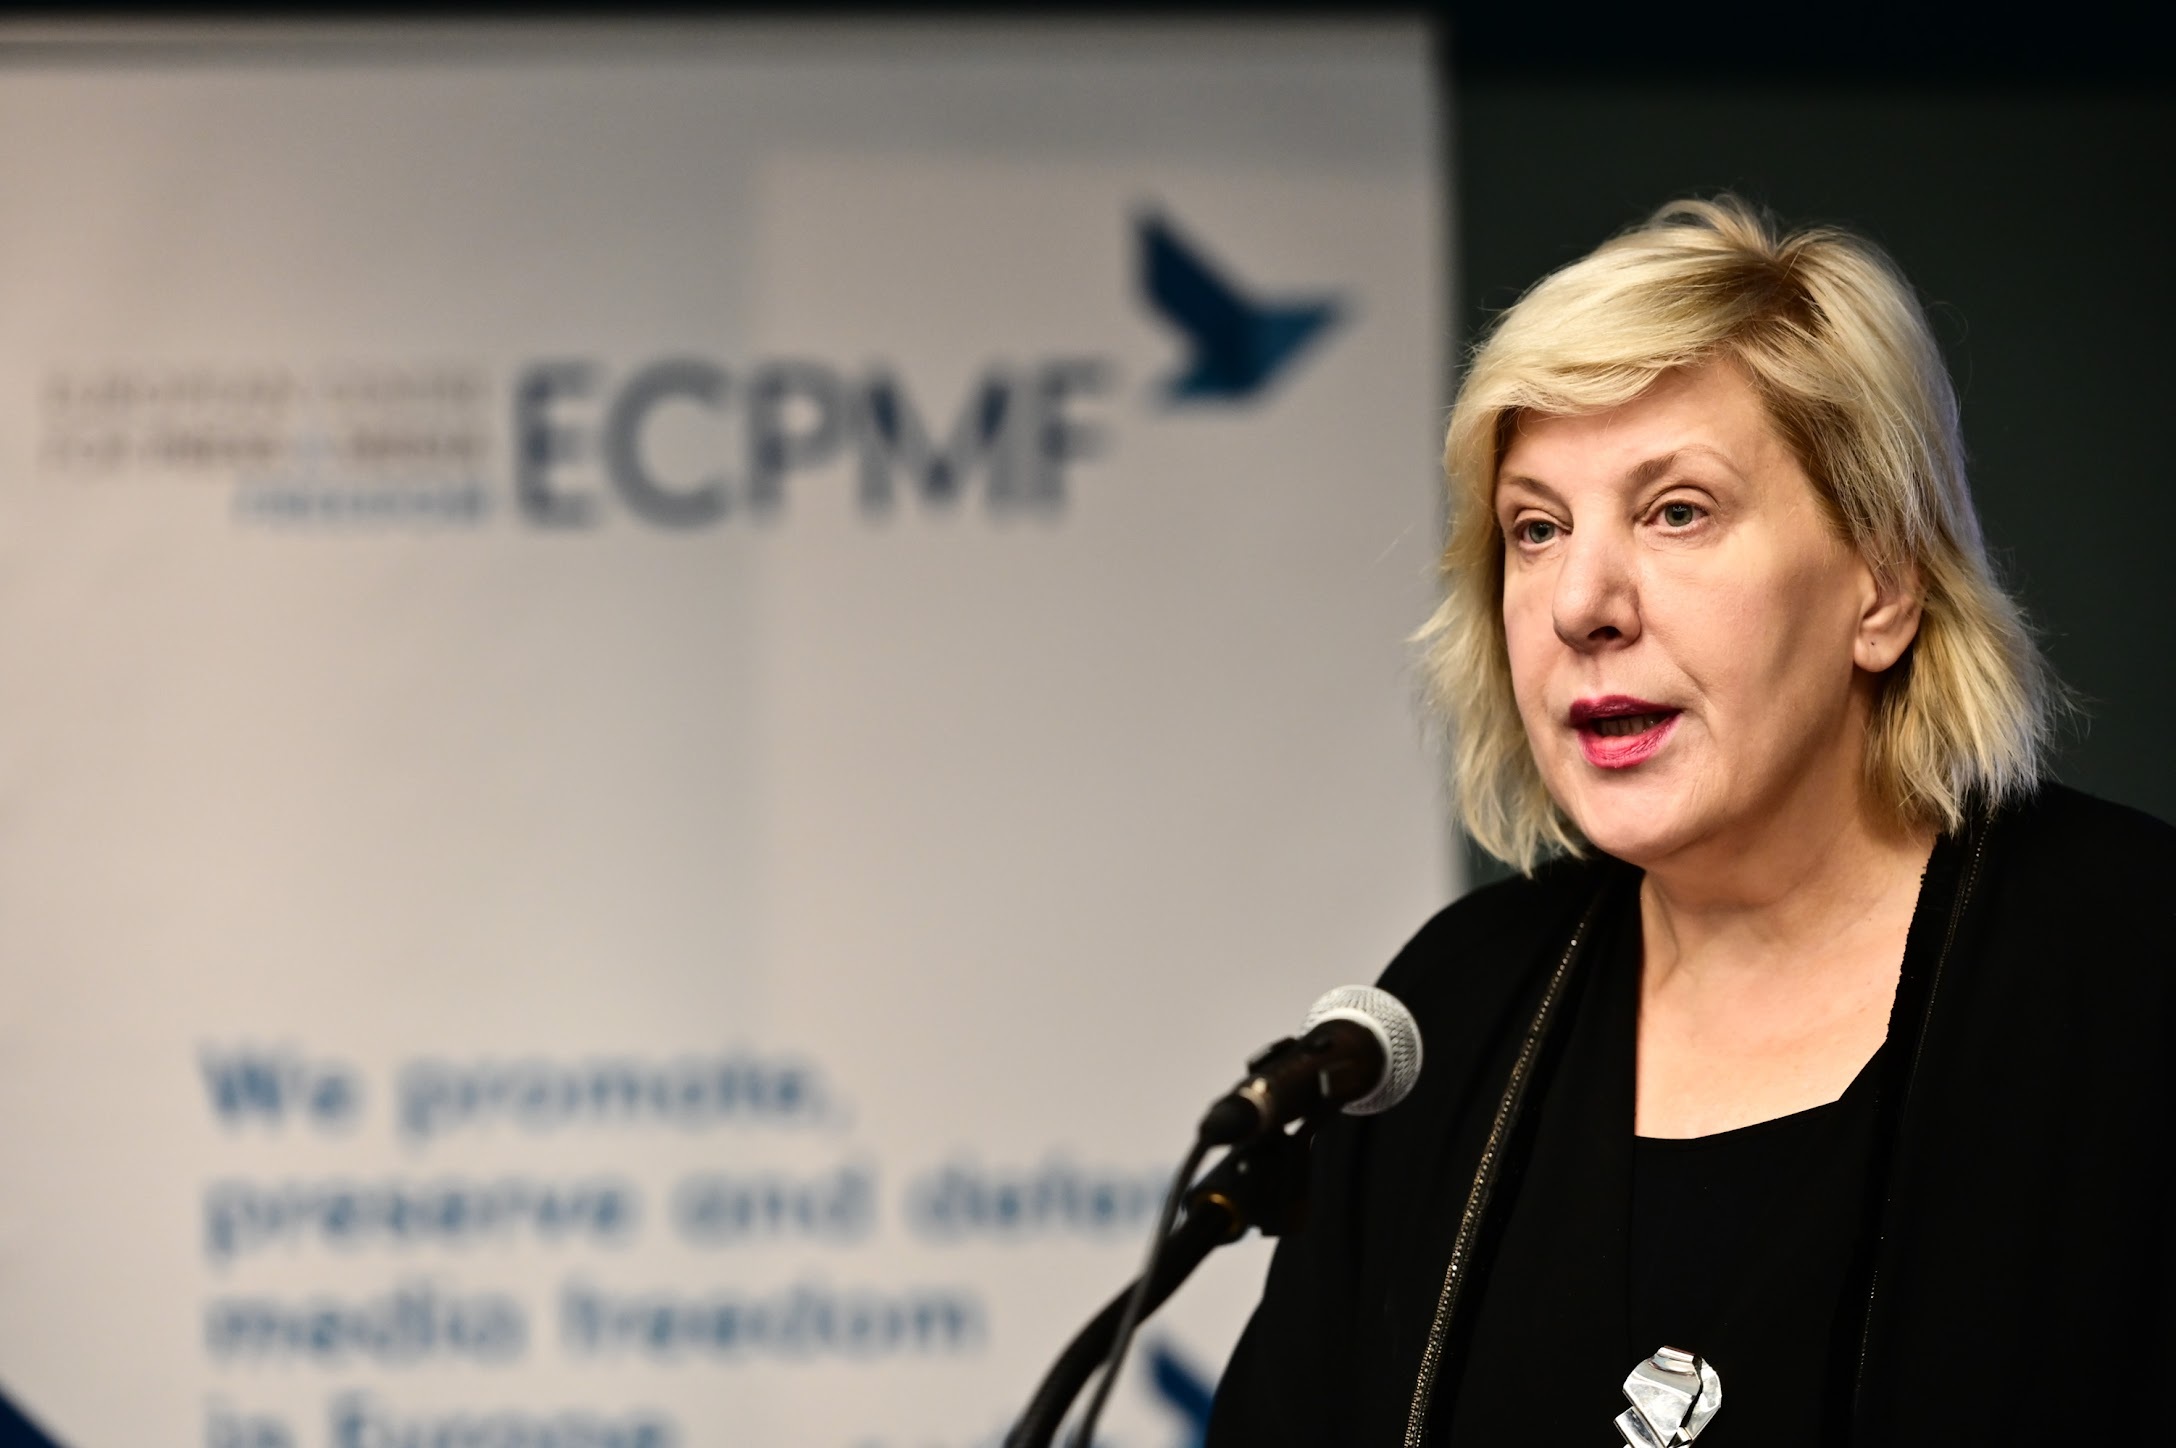 Dunja Mijatović, Commissaria per i Diritti Umani in seno al Consiglio d’Europa © Andreas Lamm, ECPMF